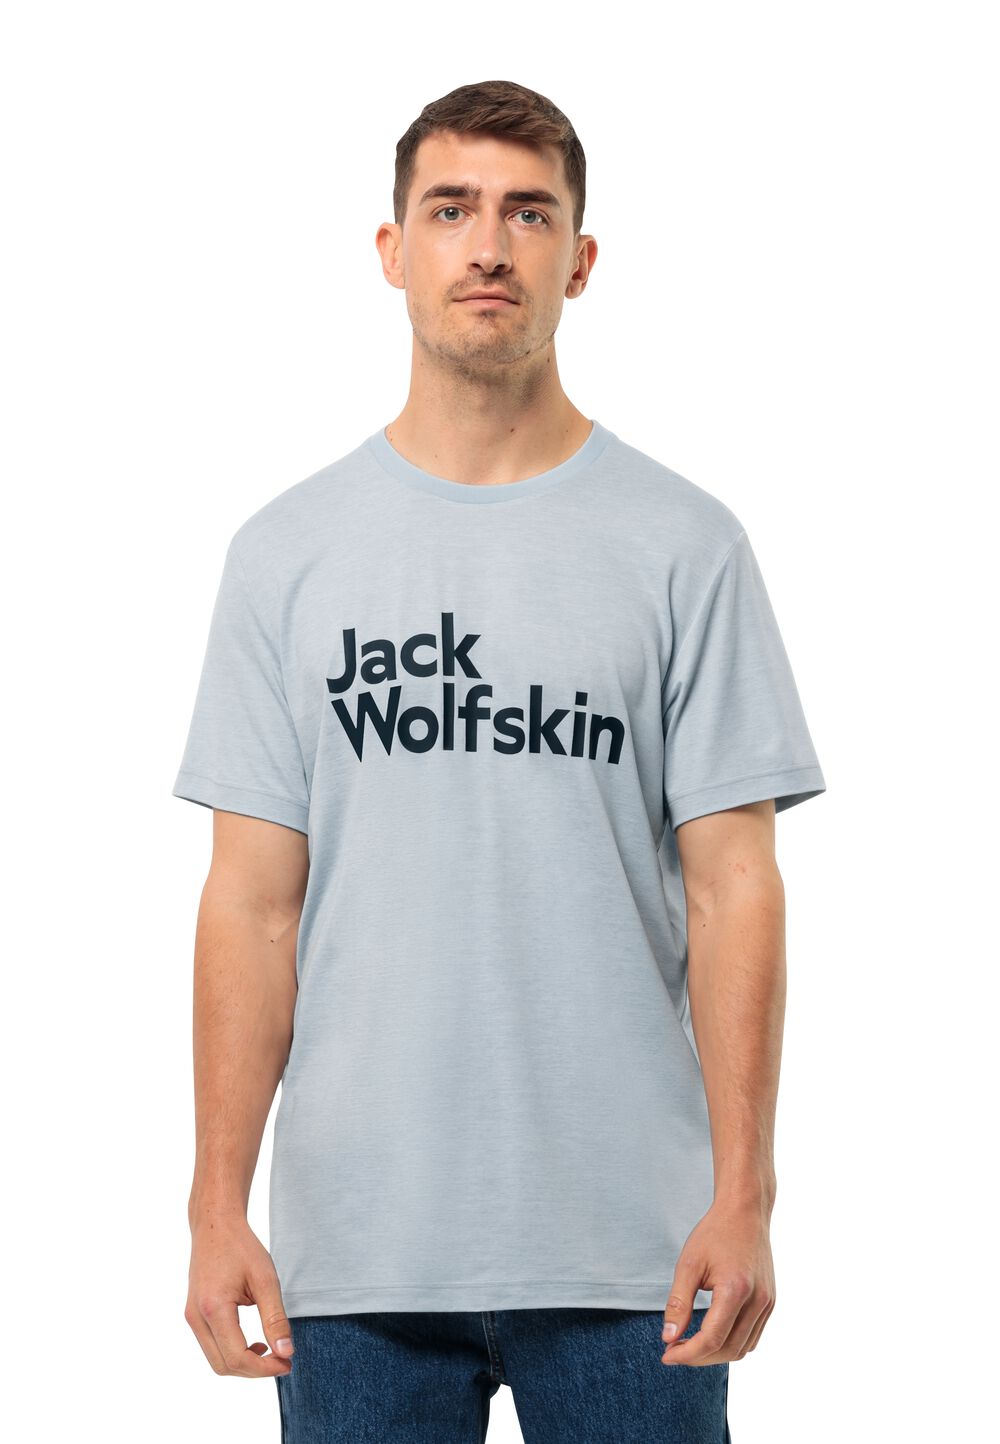 Jack Wolfskin Brand T-Shirt Men Functioneel shirt Heren 3XL soft blue soft blue